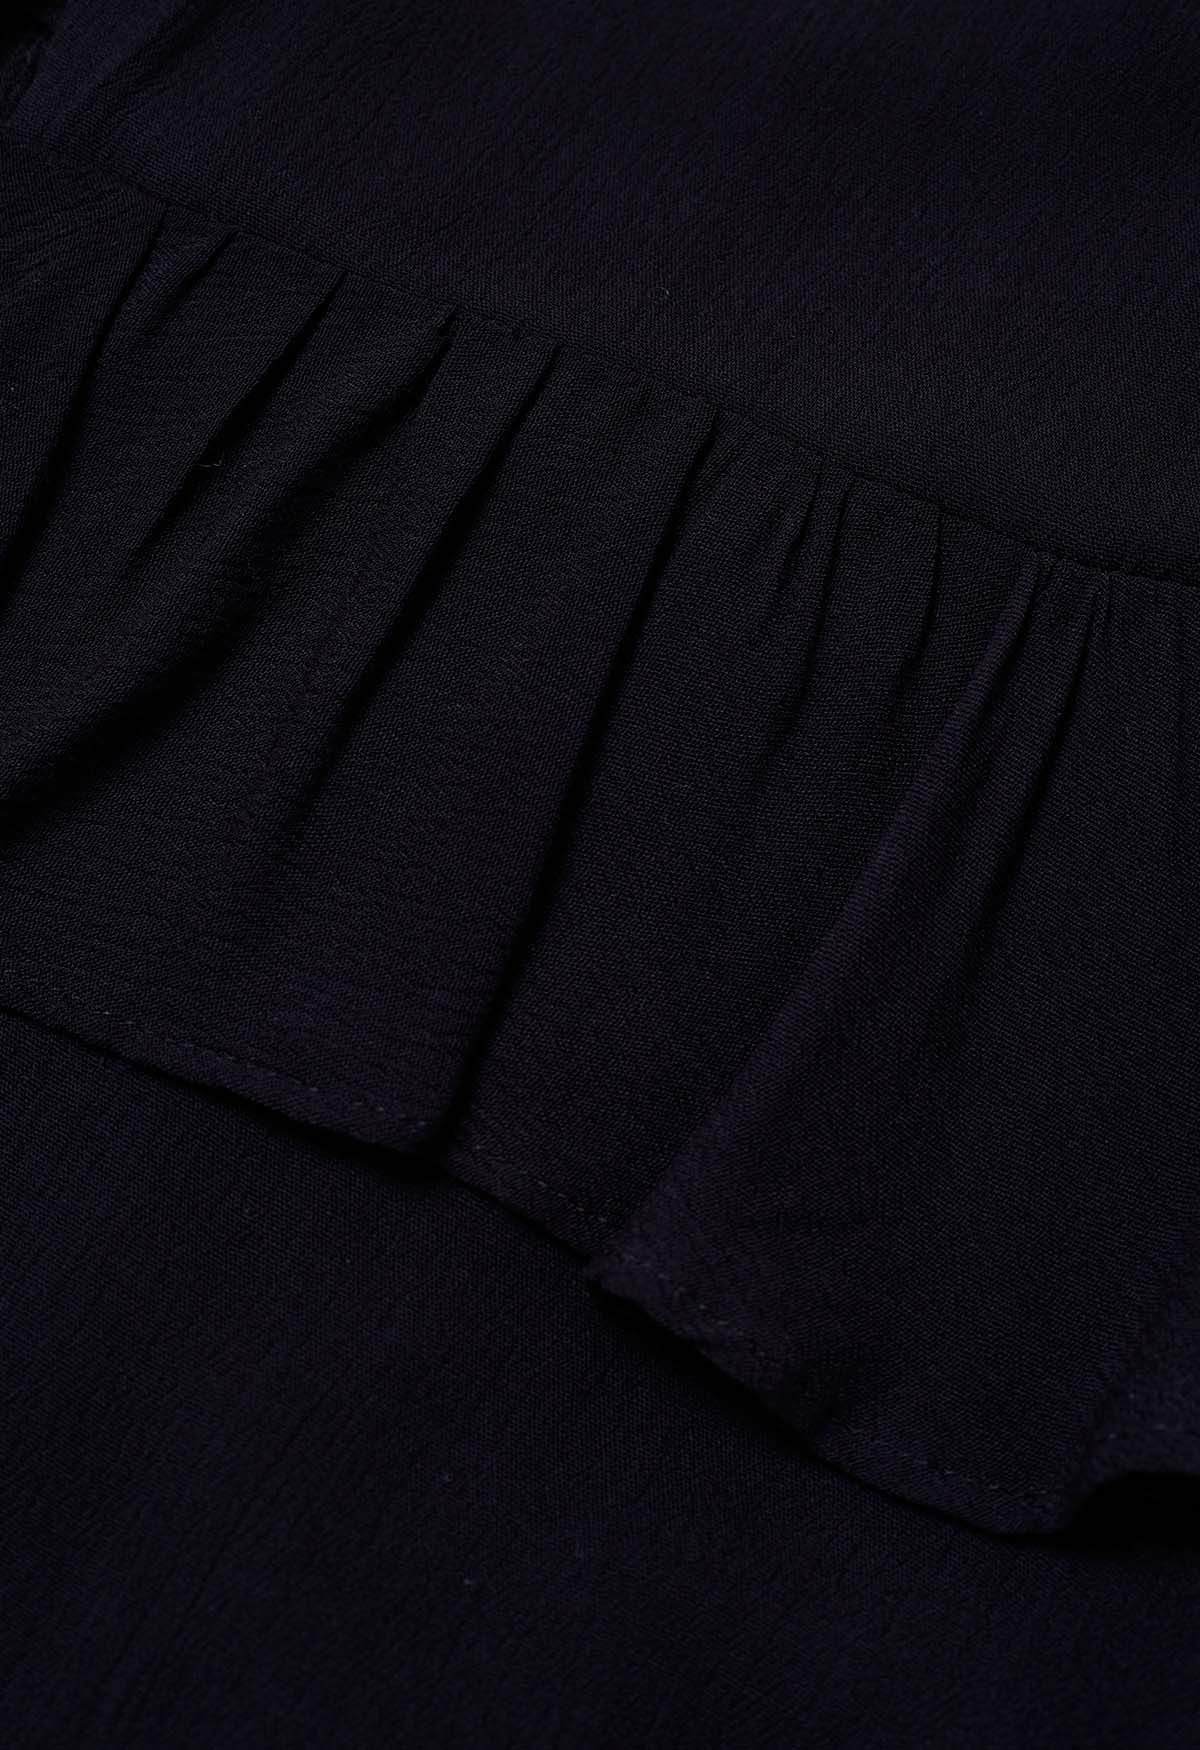 فستان مكشكش بحزام وأكمام فقاعية مبالغ فيها باللون الأسود